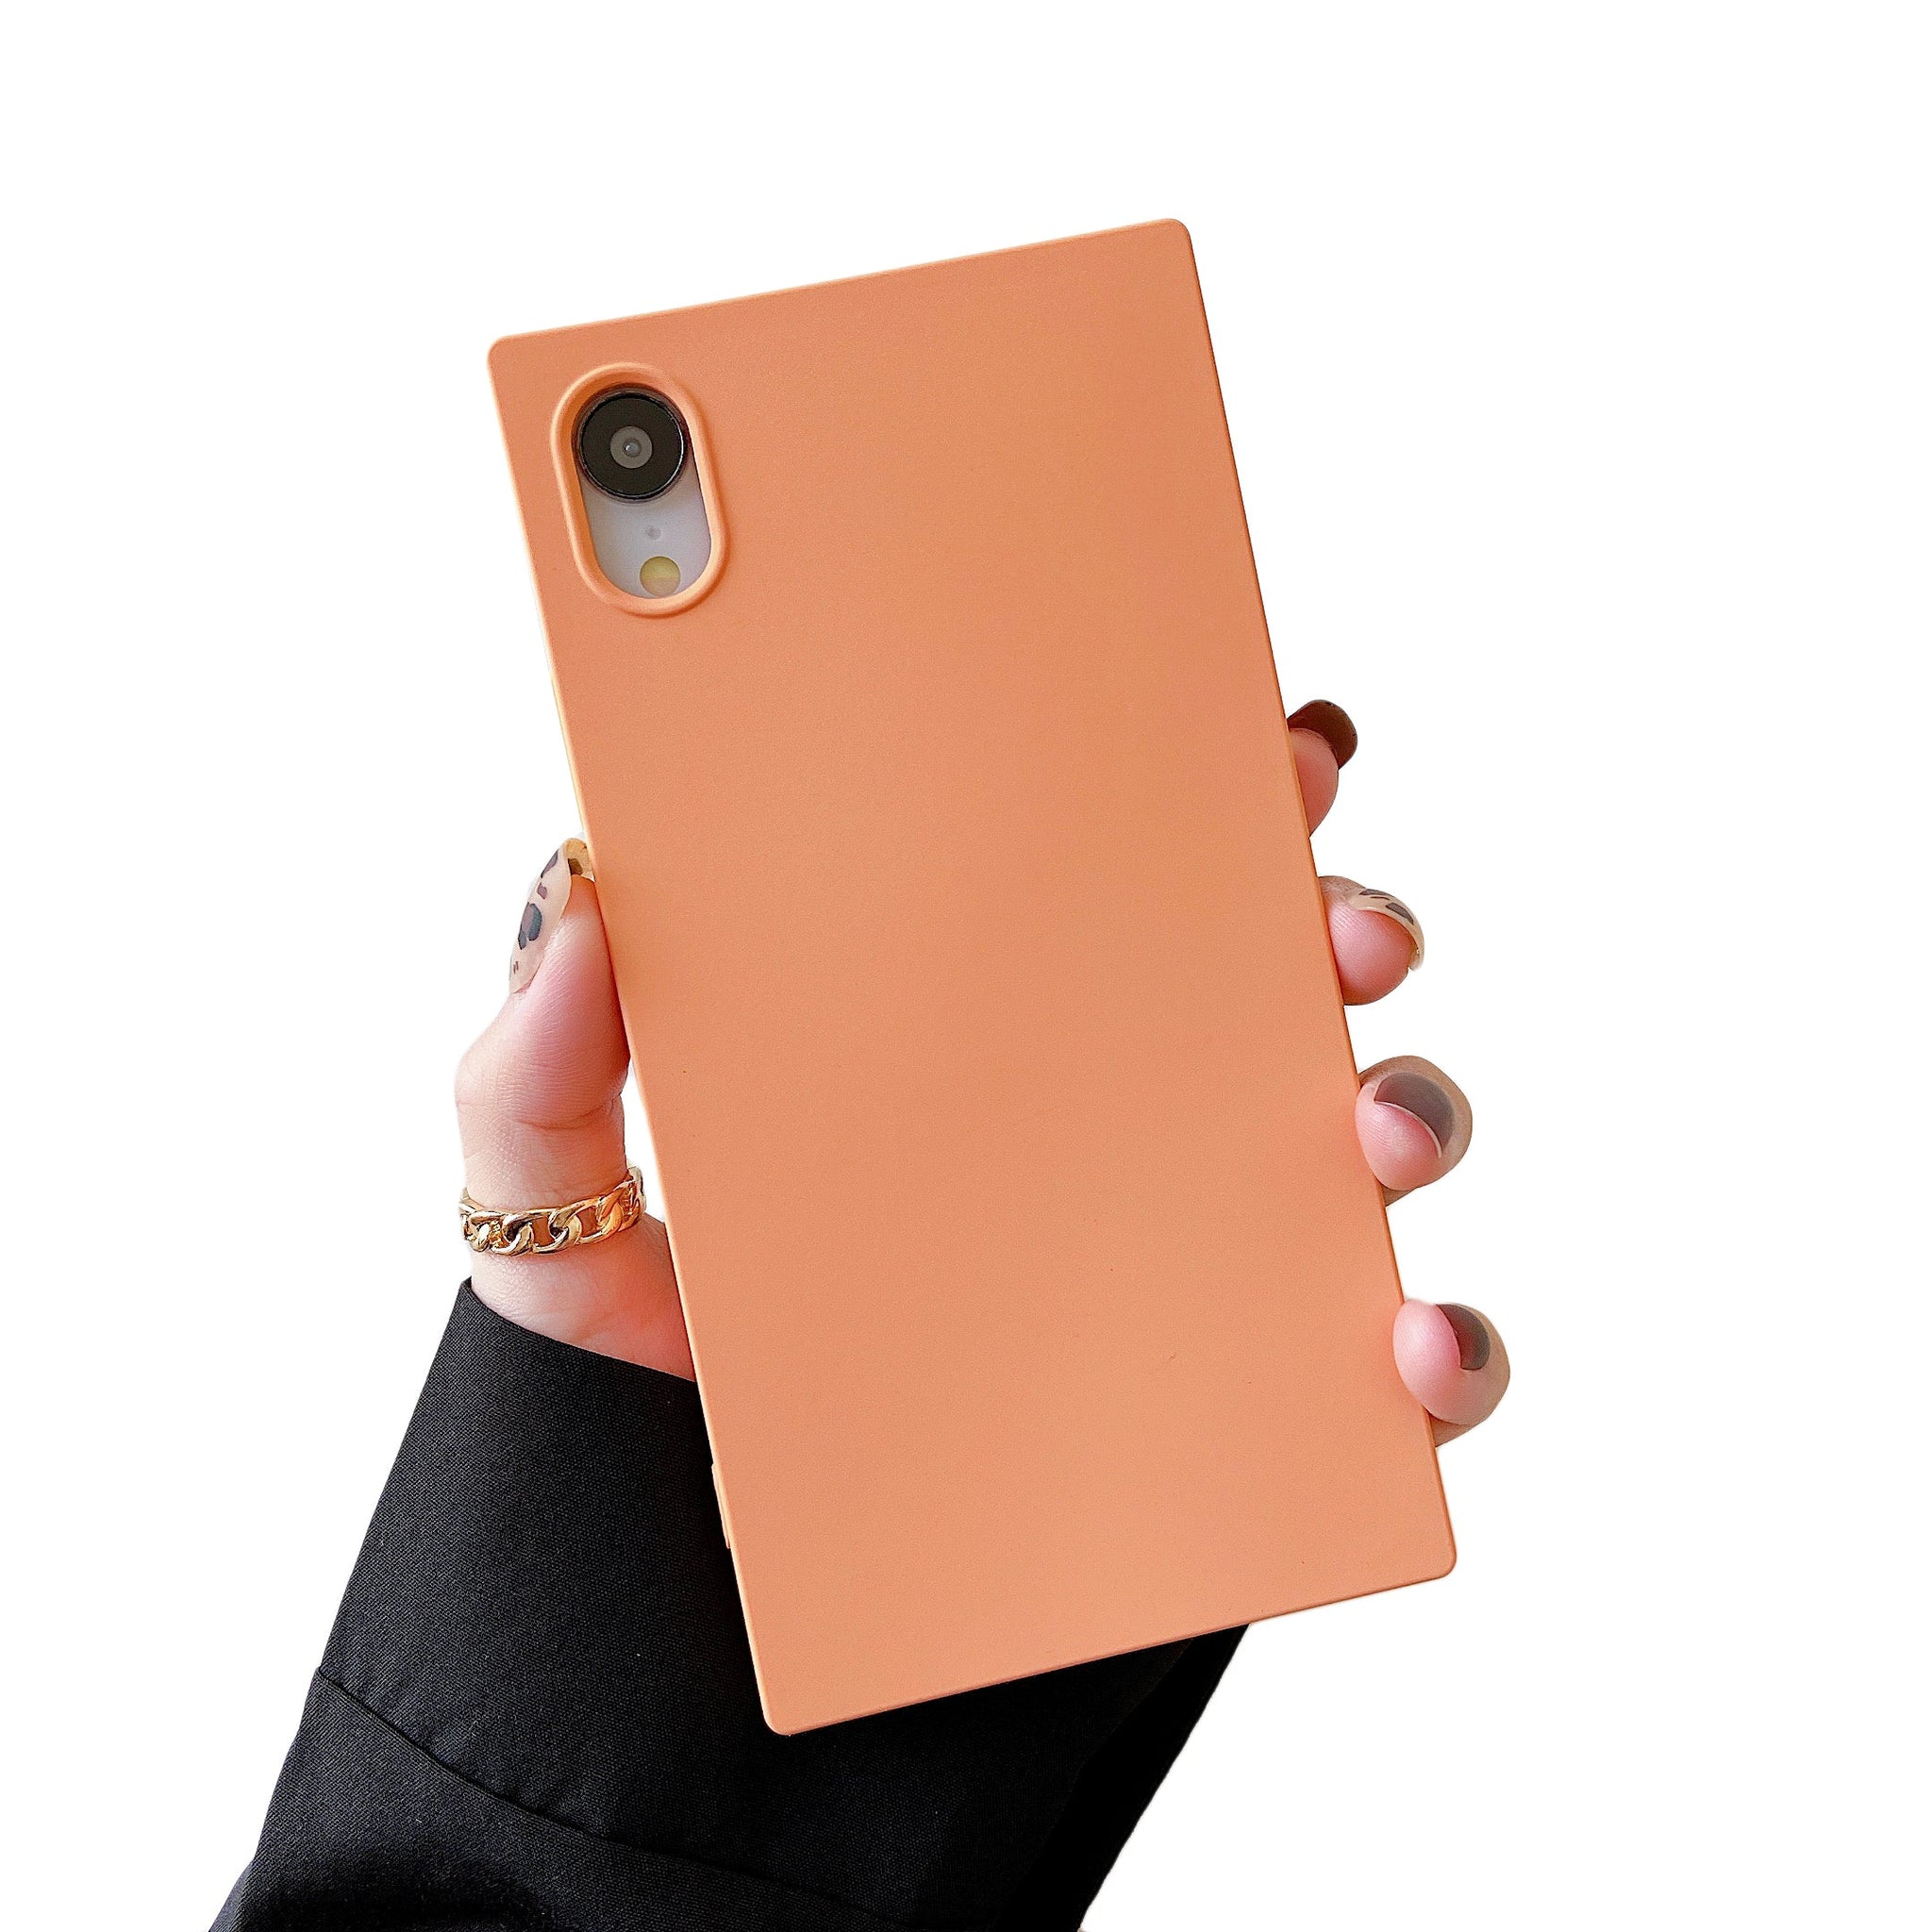 iPhone XR Case Square Silicone (Marigold Orange)